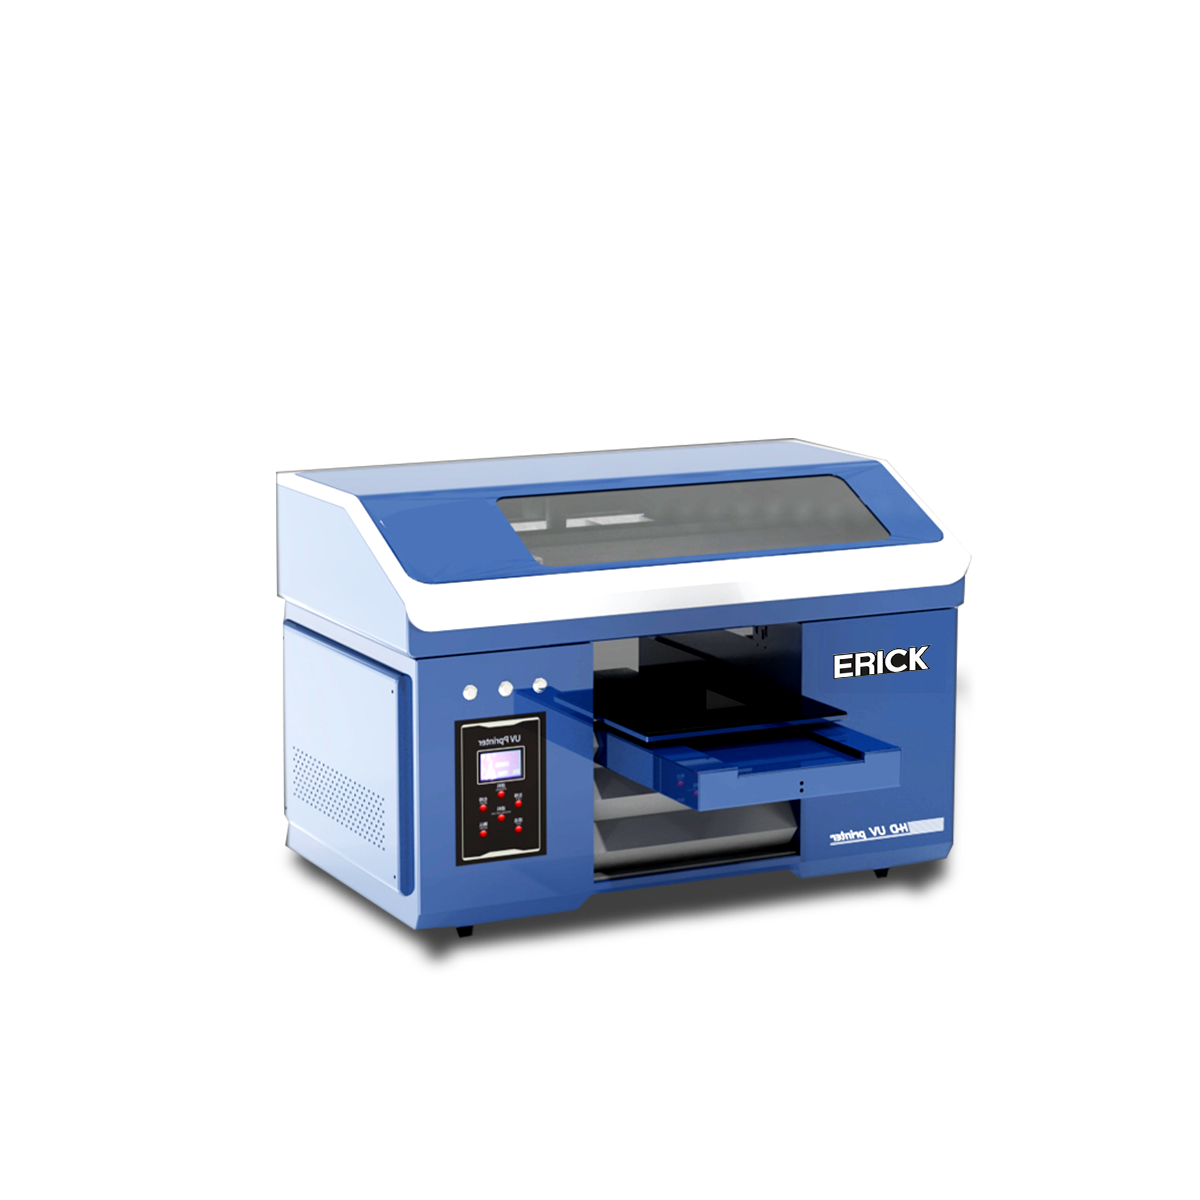 UV3060 2pc X1600 UV Printer Buug-yaraha